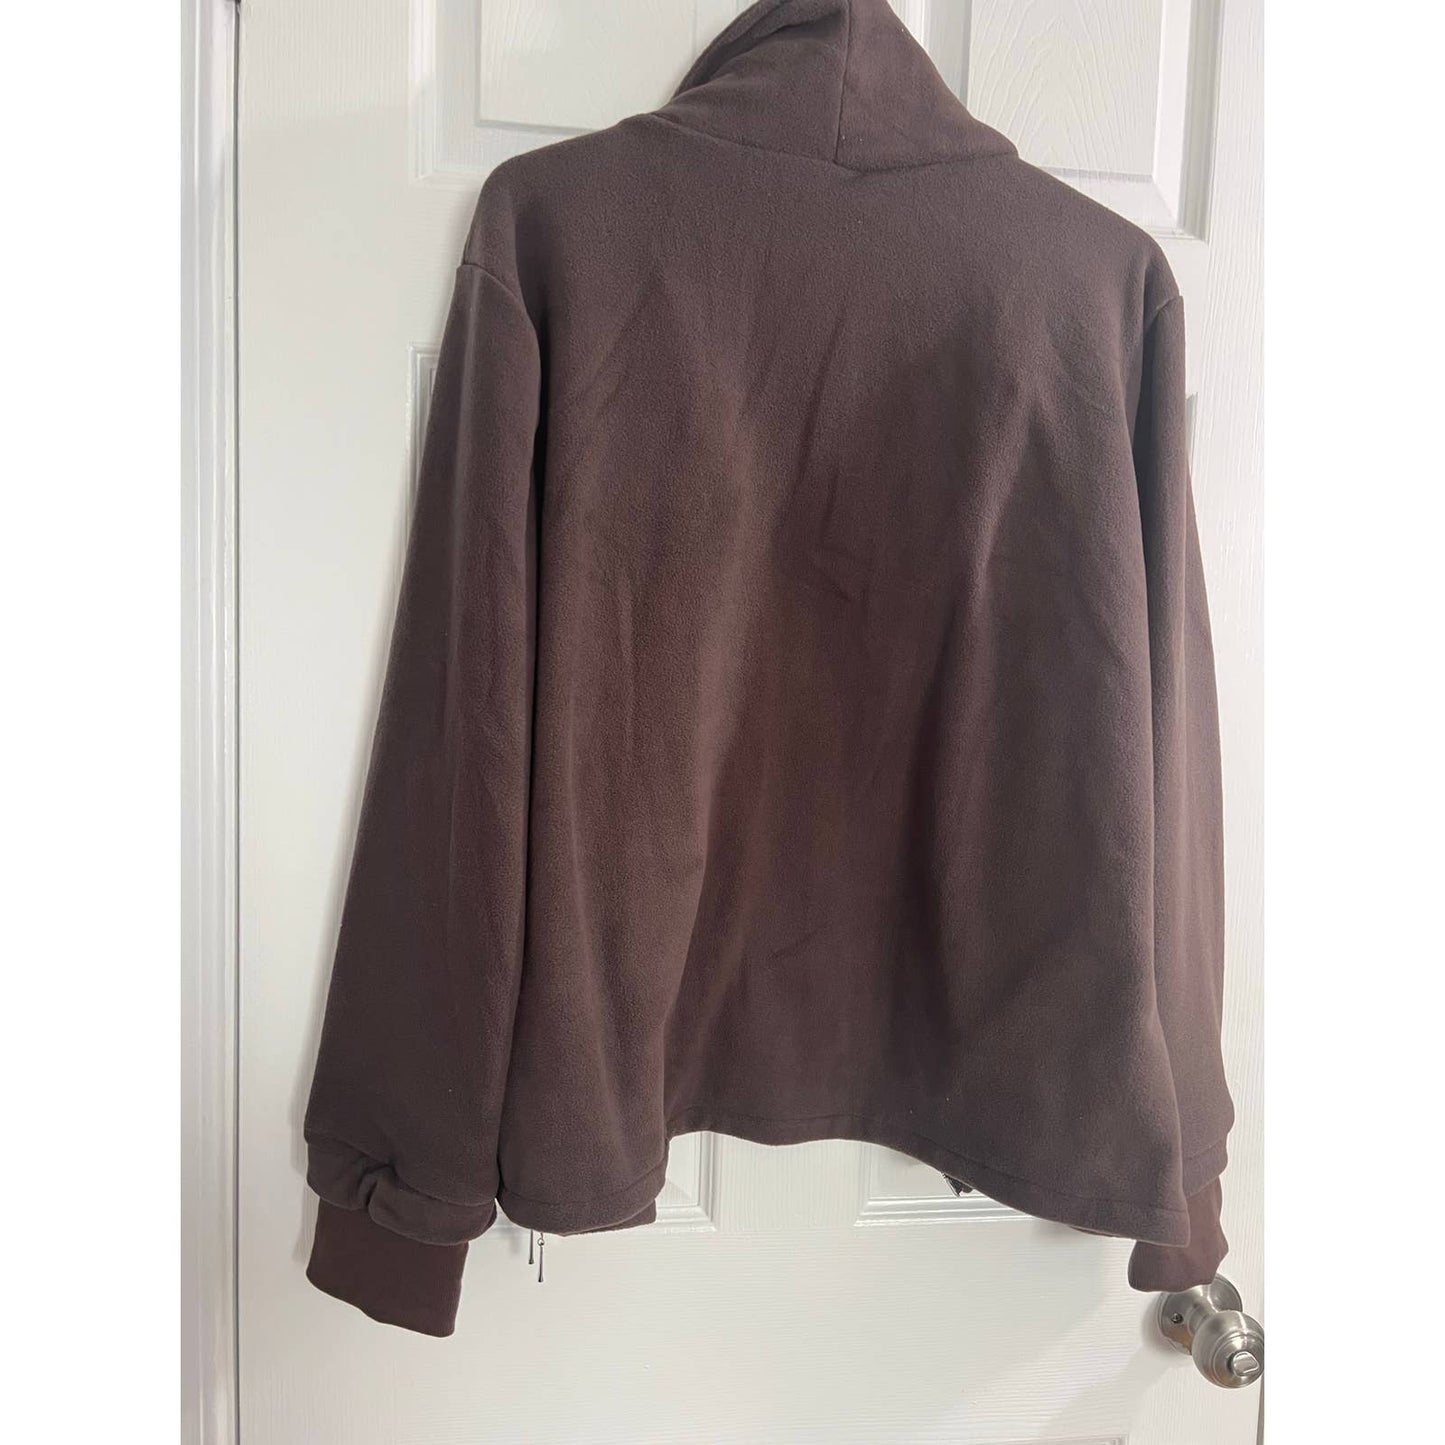 ACEVOG Women's Long Sleeve Zip Up Fleece Sweatshirt Jacket with Pocket XL